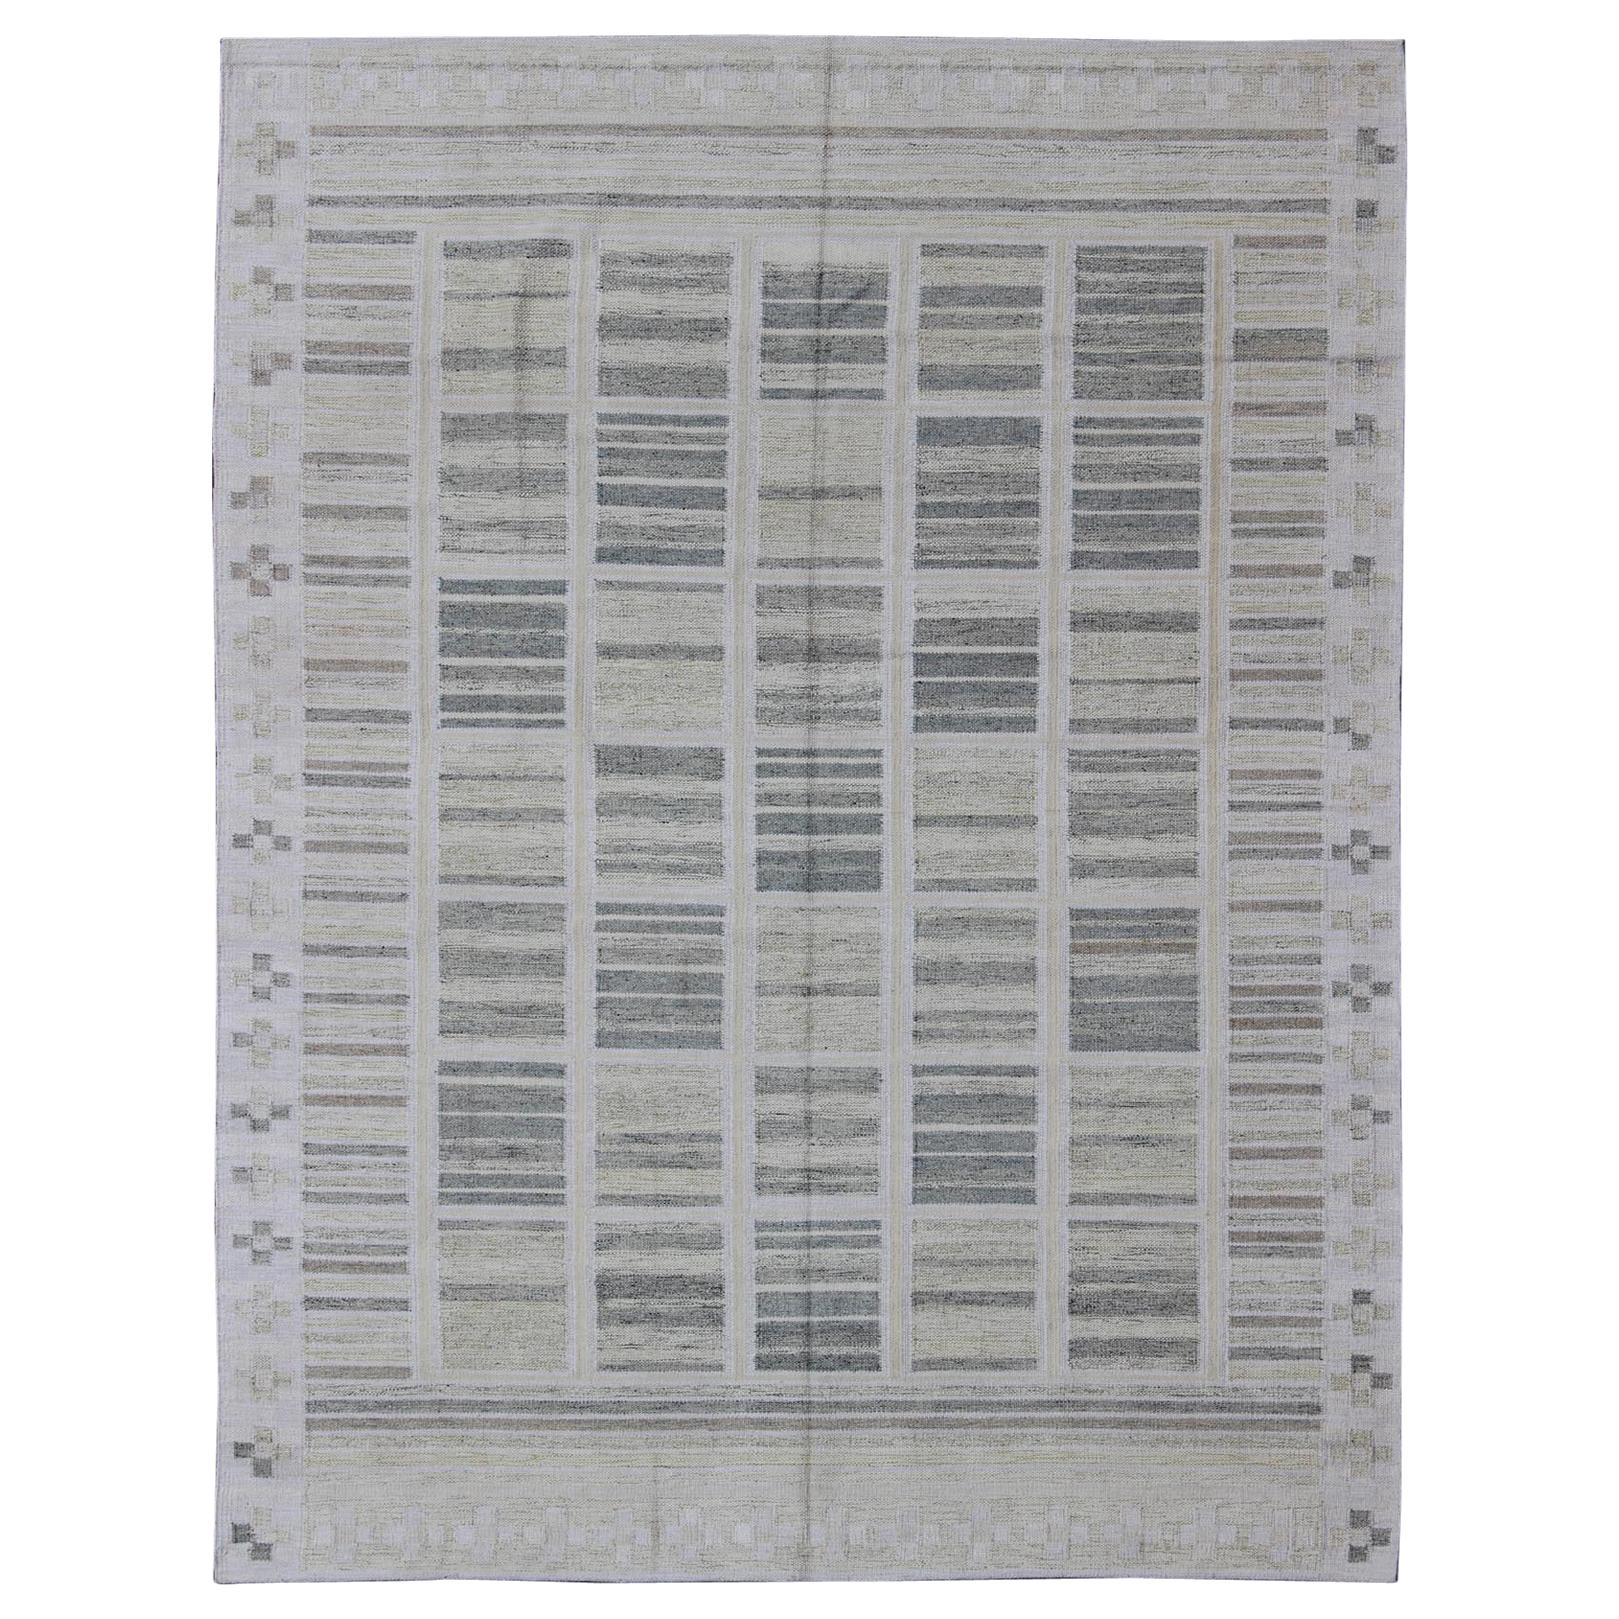 Neutral Stripe Pattern Modern Scandinavian Flat-Weave Rug in Shades of Gray